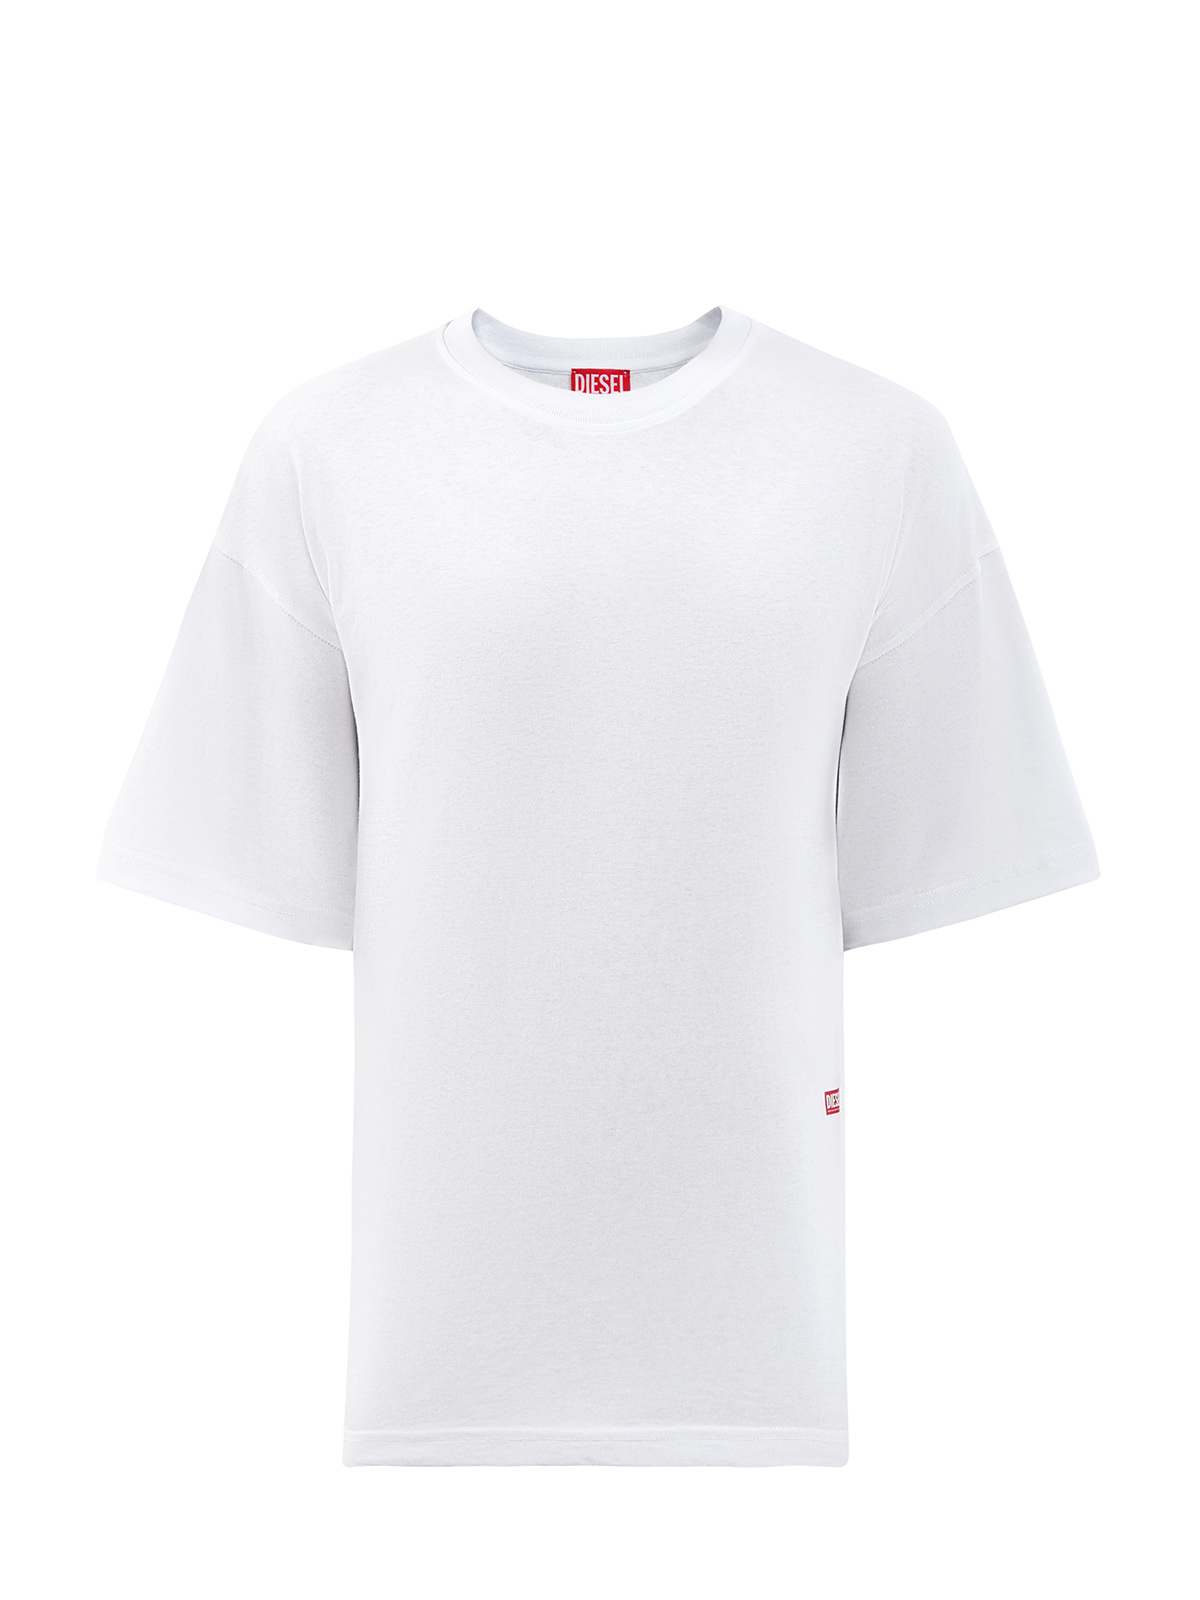 Свободная футболка T-Boxt из хлопка с принтом и логотипом DIESEL, цвет белый, размер S;M